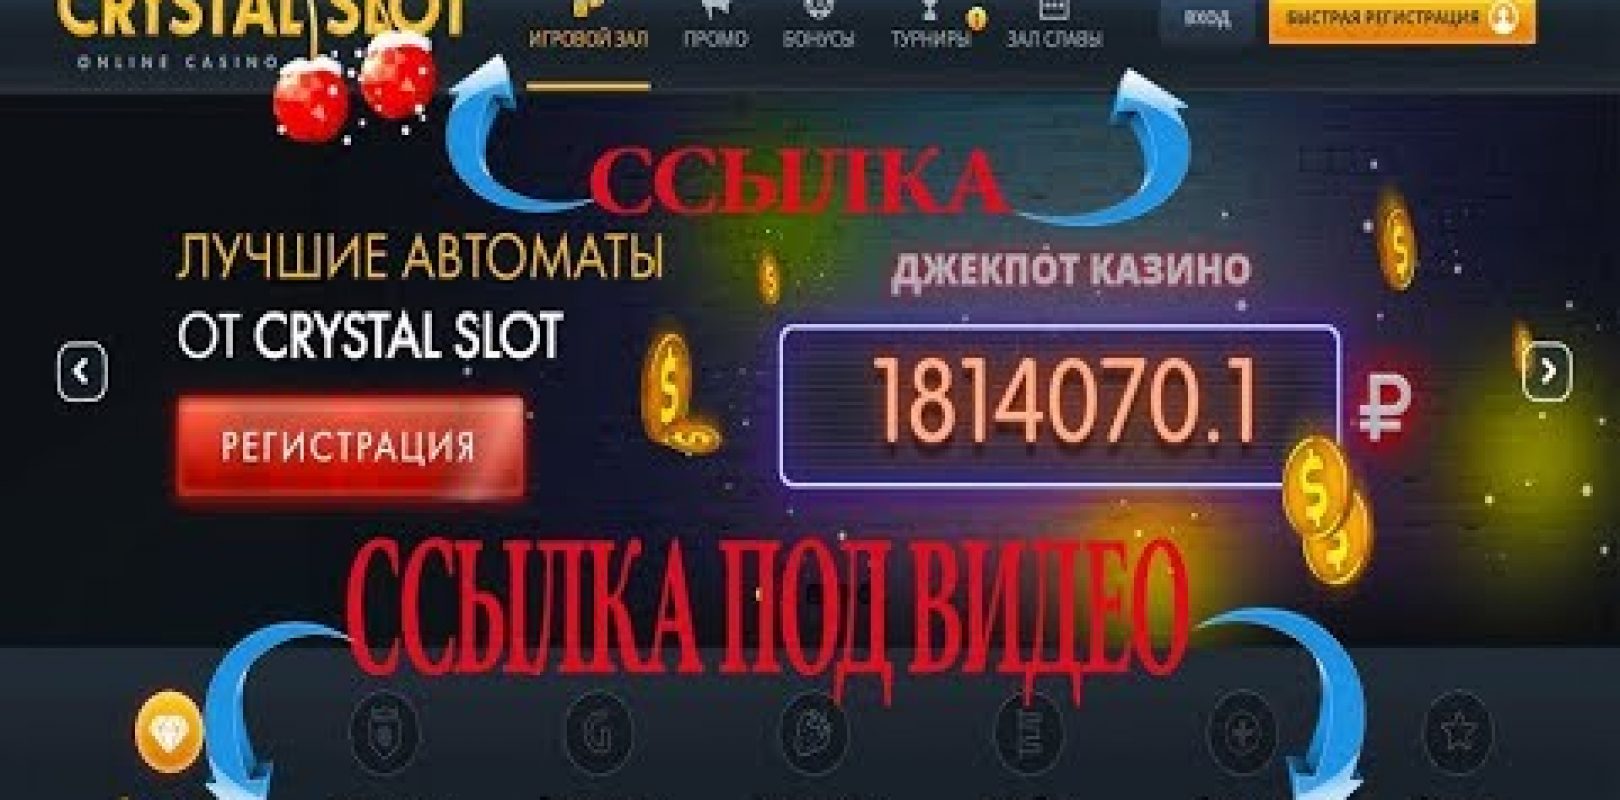 Обыгрывать онлайн казино видео покер старс играть онлайн at